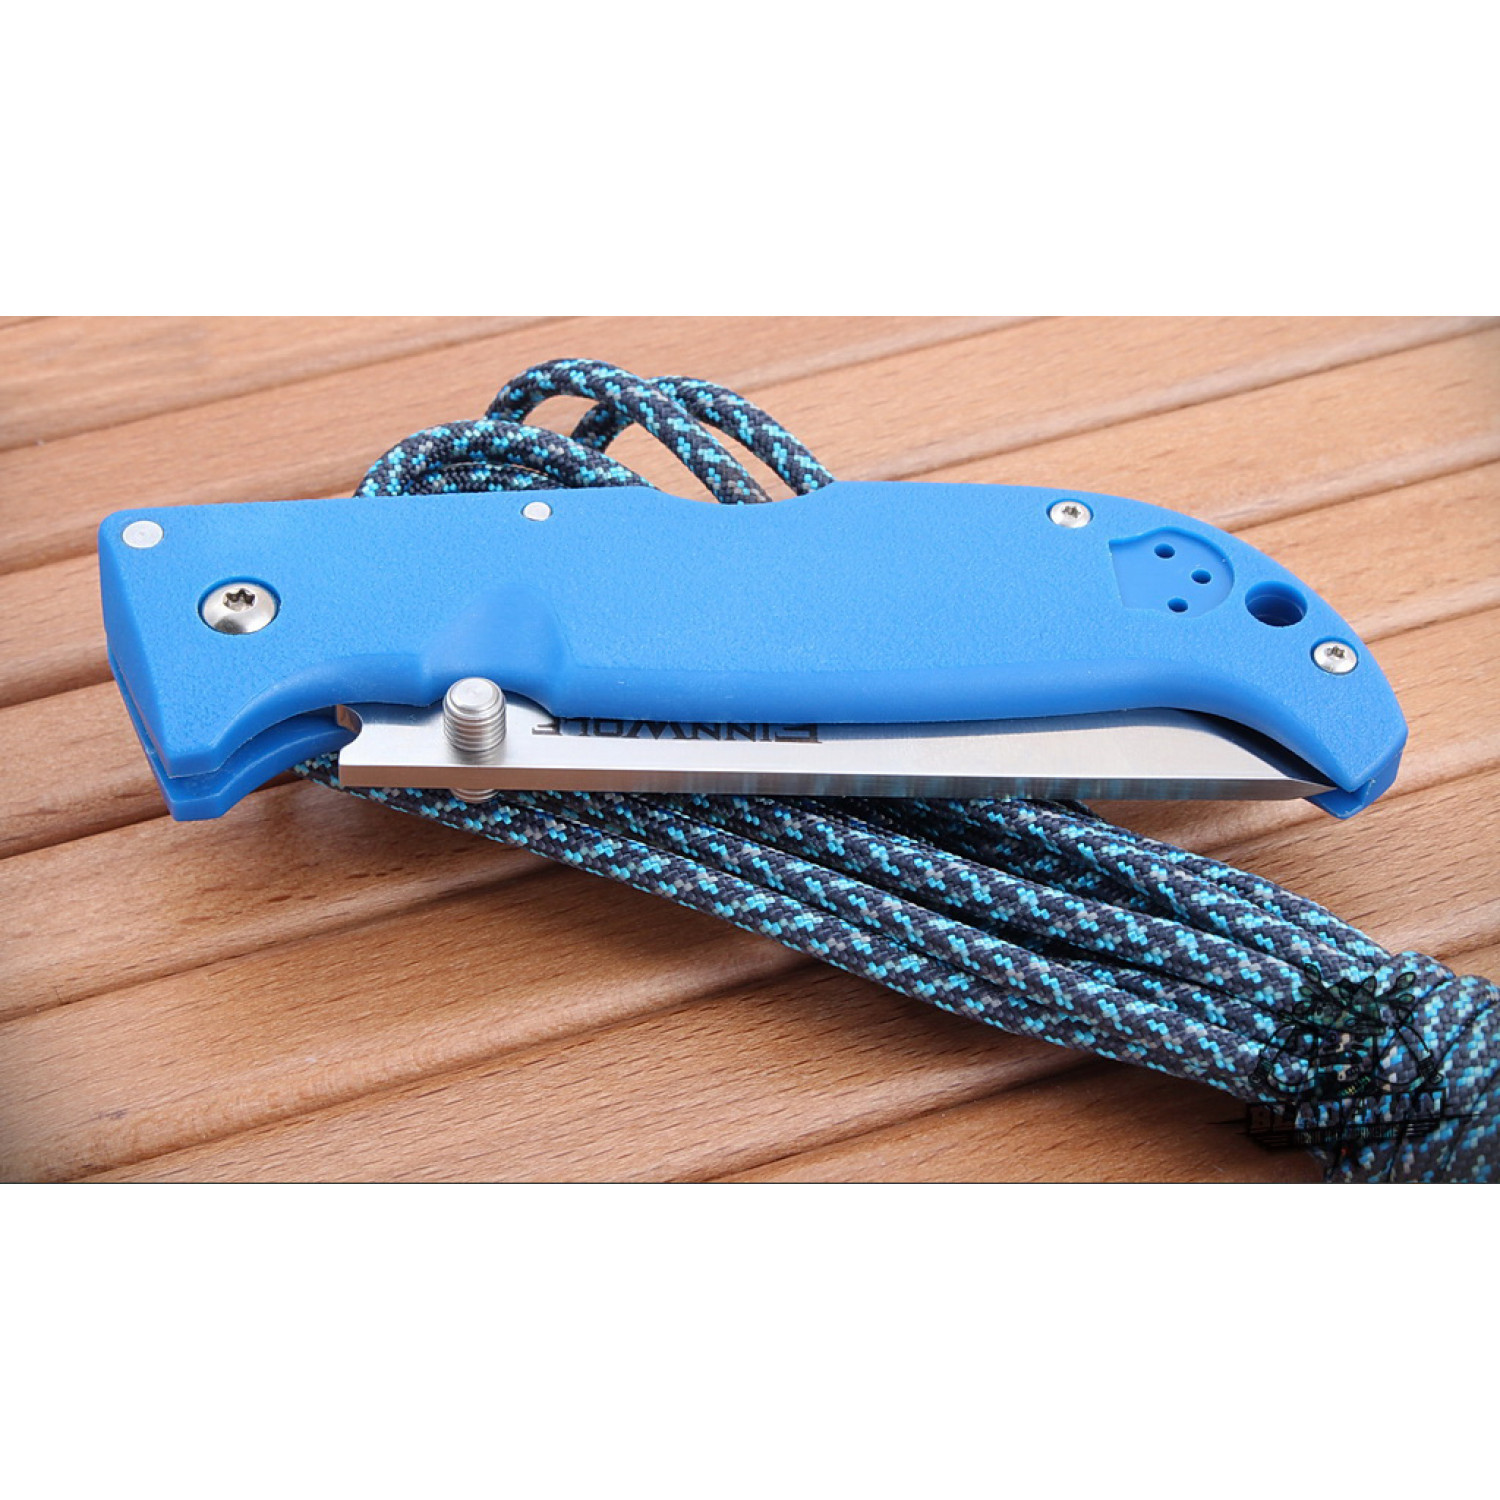 Складной нож Finn Wolf (Blue) - Cold Steel 20NPG, сталь AUS 8A, рукоять Grivory® (высококачественный термопластик) - фото 6